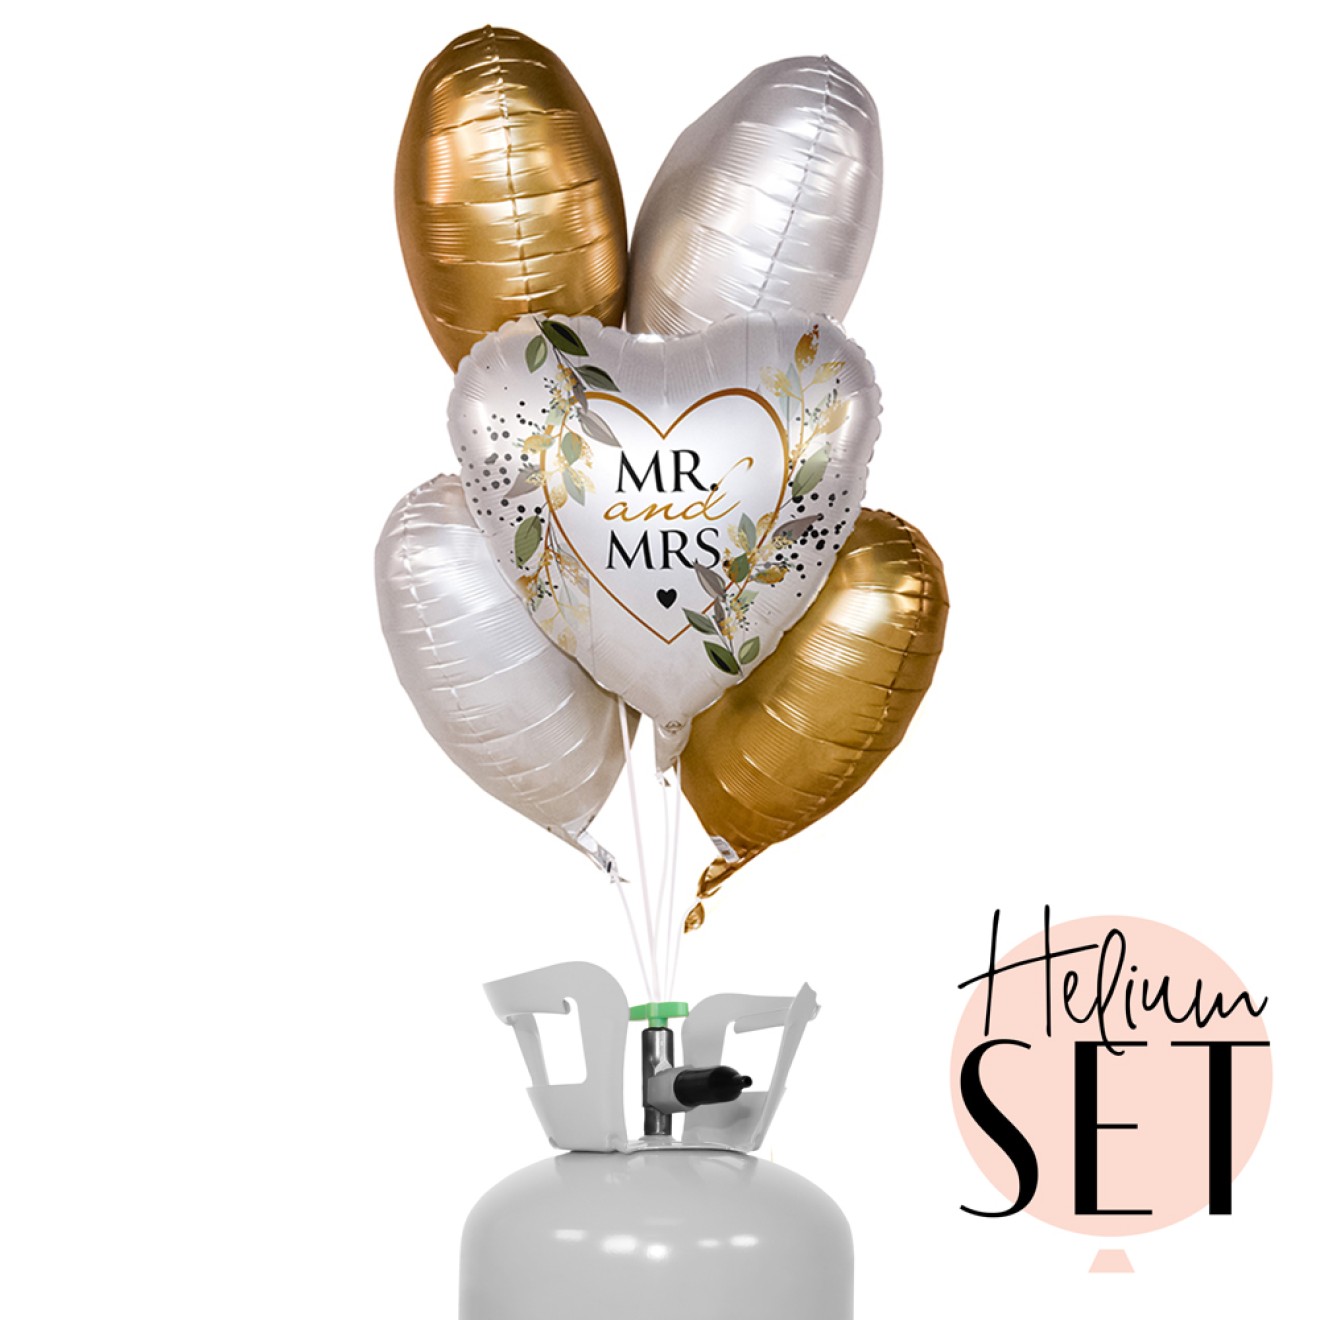 Helium Set - Mr. & Mrs. Botanical